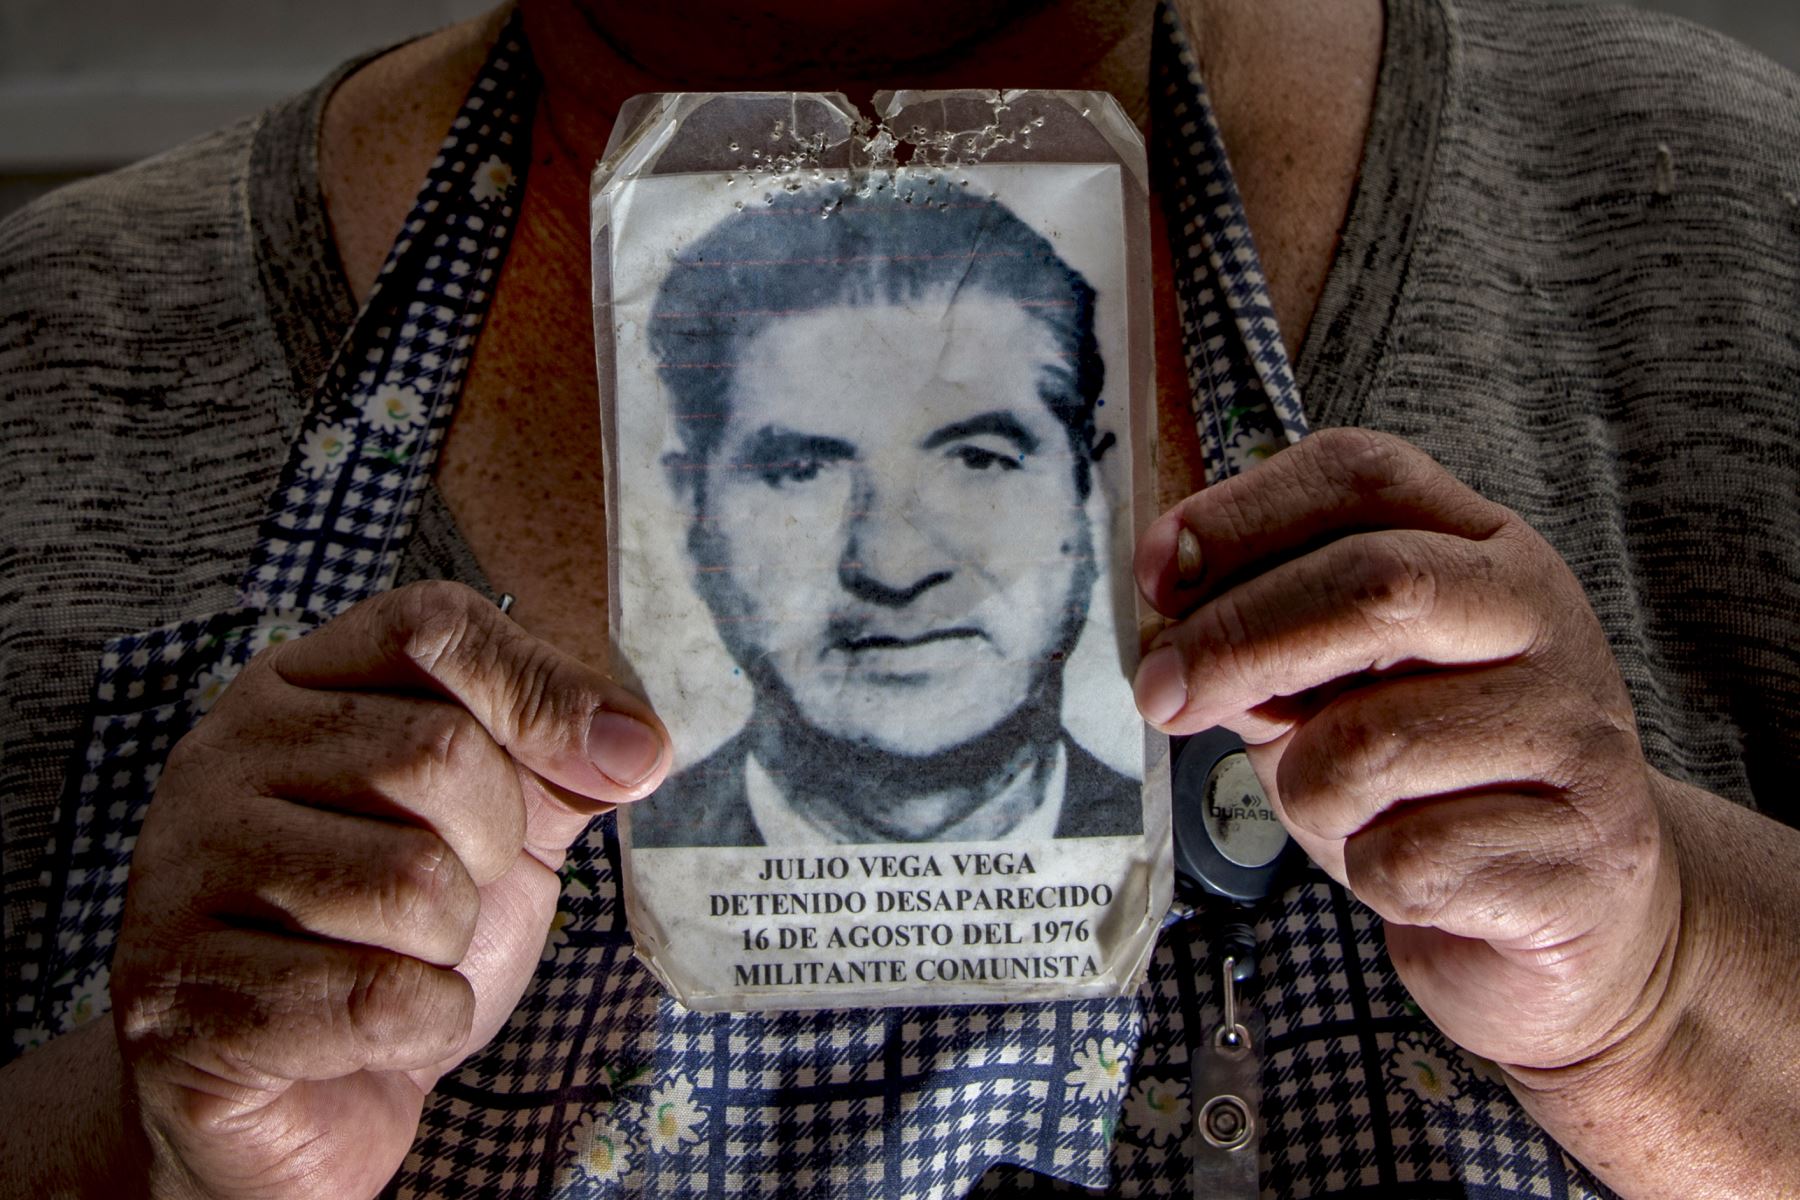 Marisol Vega, nieta de Julio Vega, quien desapareció en 1976 durante la dictadura militar de Augusto Pinochet, posa sosteniendo una foto de su abuelo. Foto: AFP